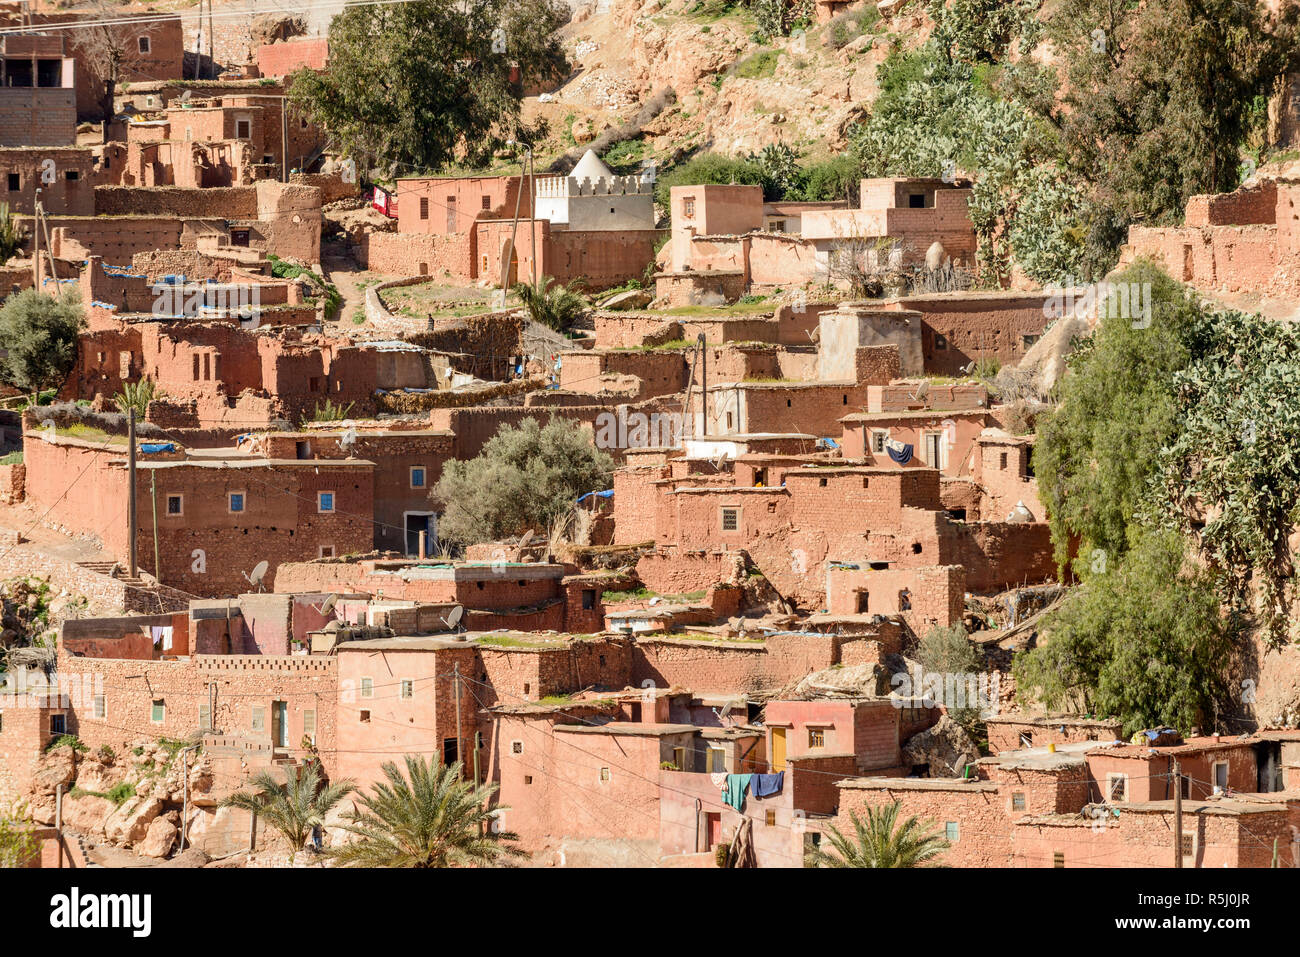 01-03-15, Marrakesch, Marokko. Einer Abgelegenen ländlichen Dorf im sub-Atlas Berber Region. Die meisten Häuser sind aus Lehmziegeln gebaut. Foto: © Simon Grosse Stockfoto